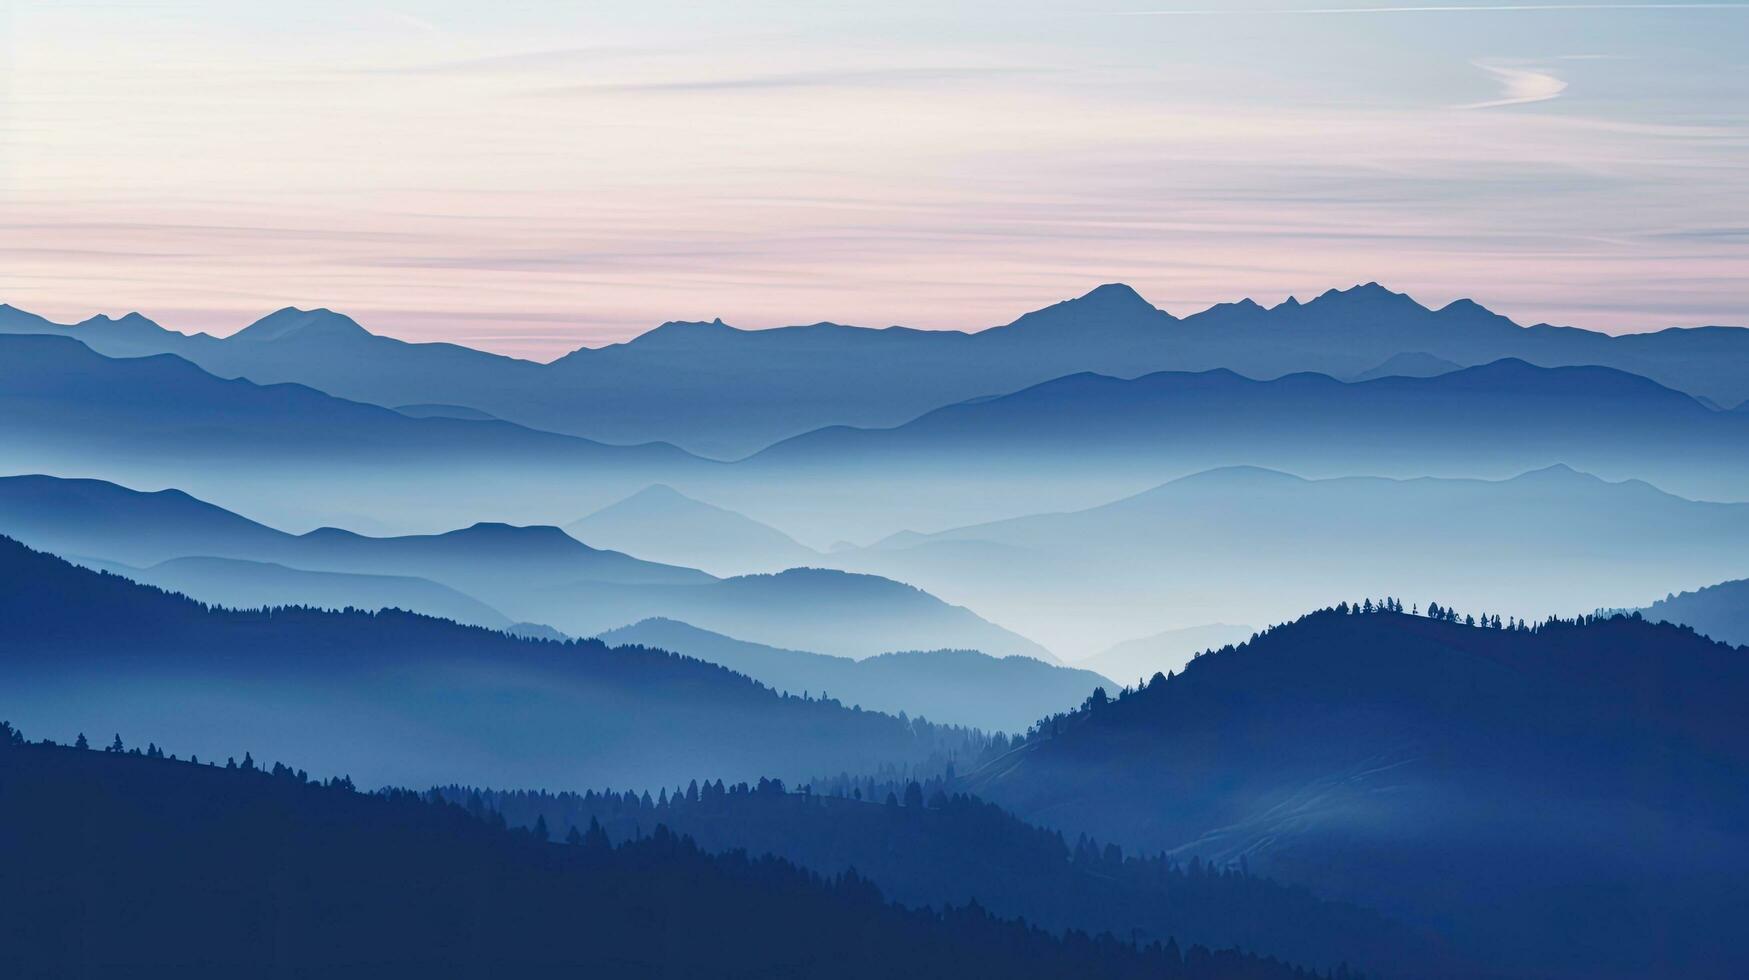 azulado suíço Alpes montar niesen silhuetas durante a outono tarde foto